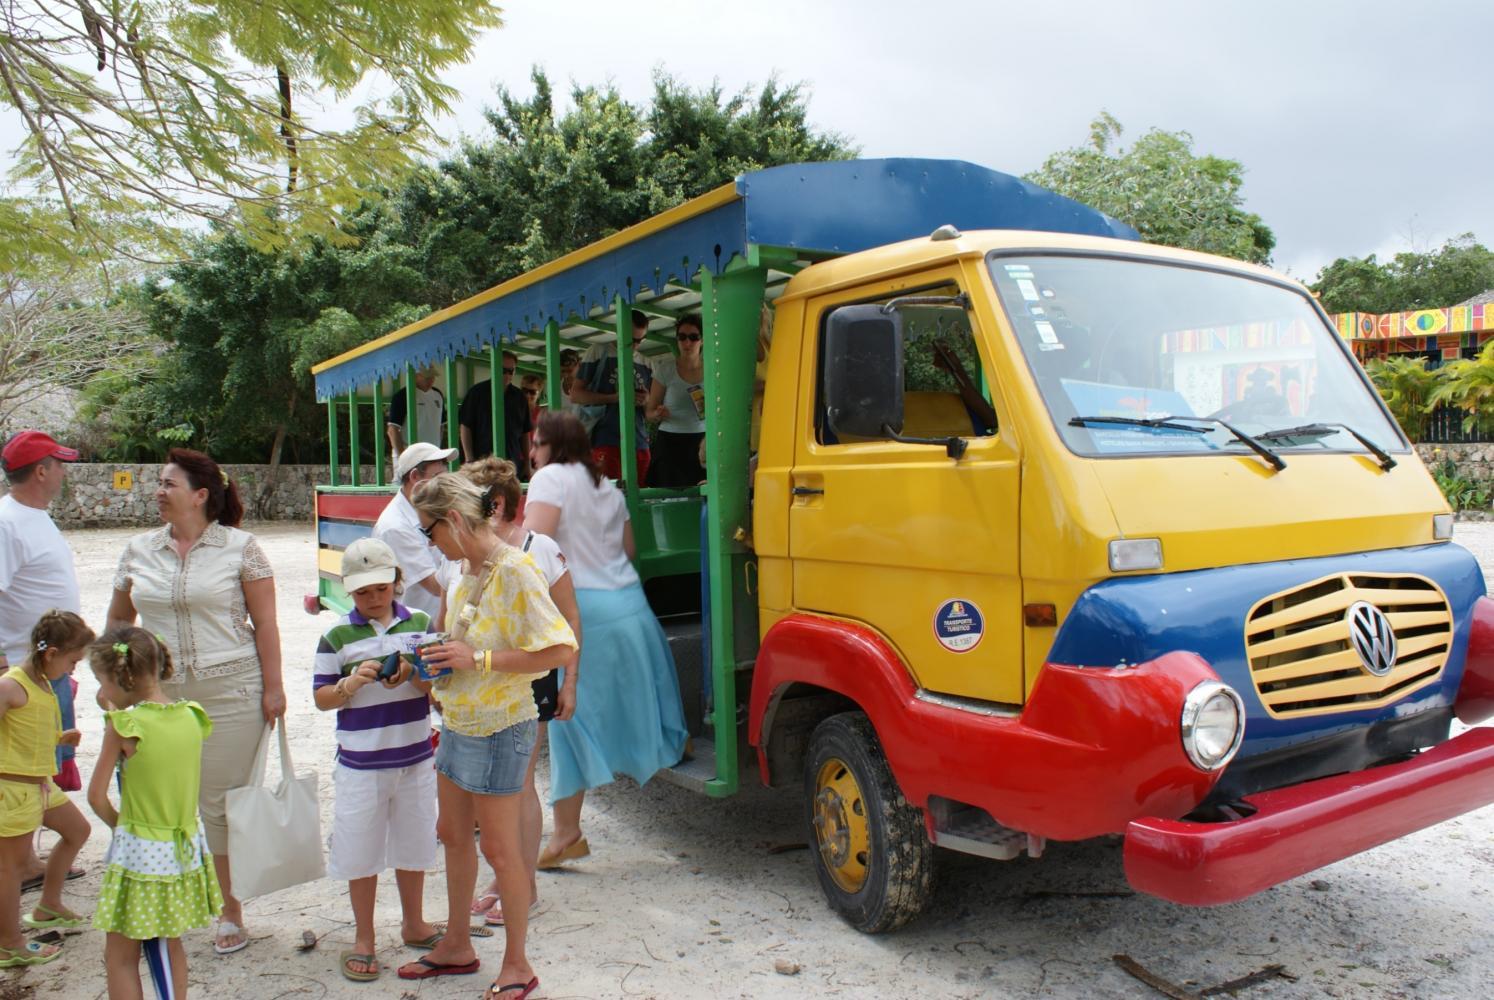 Бока-Чика в Доминикане: обзор курорта